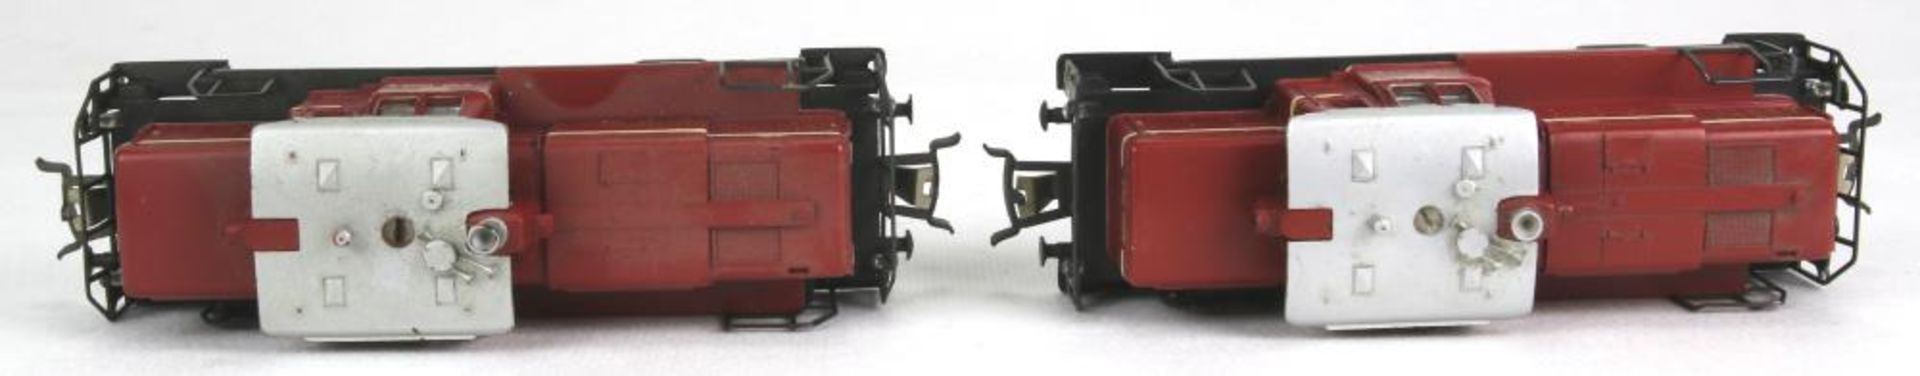 Zwei Diesel-Loks. Märklin H0 3064 (V60 1009) der DB, 3065 (V60 1009) der DB, beide in OVP. - Bild 3 aus 4